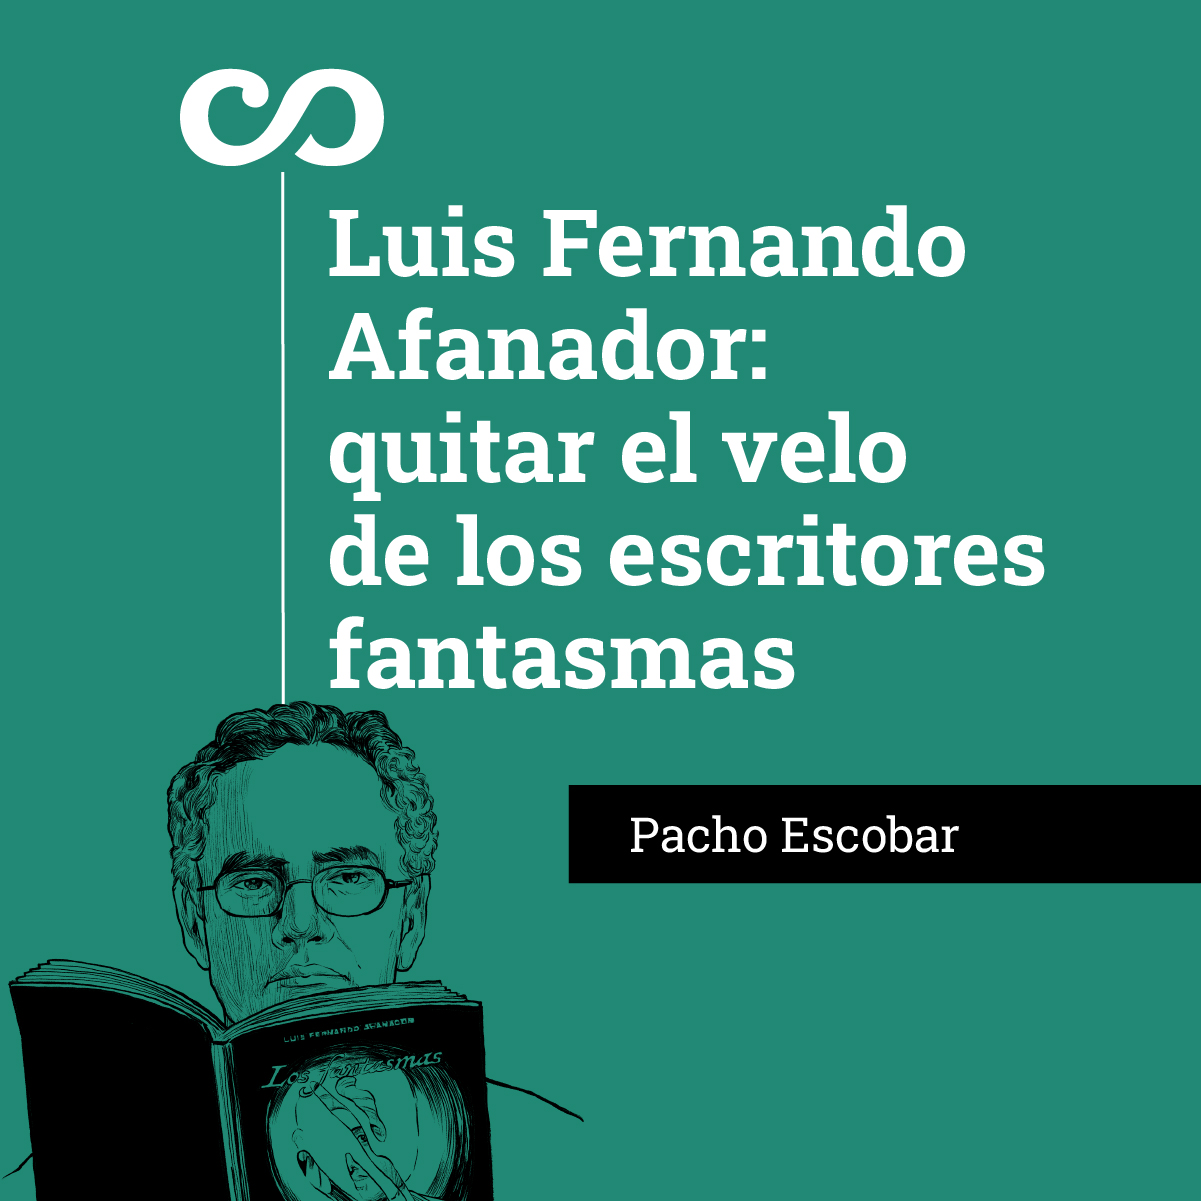 Luis Fernando Afanador: quitar el velo de los escritores fantasmas